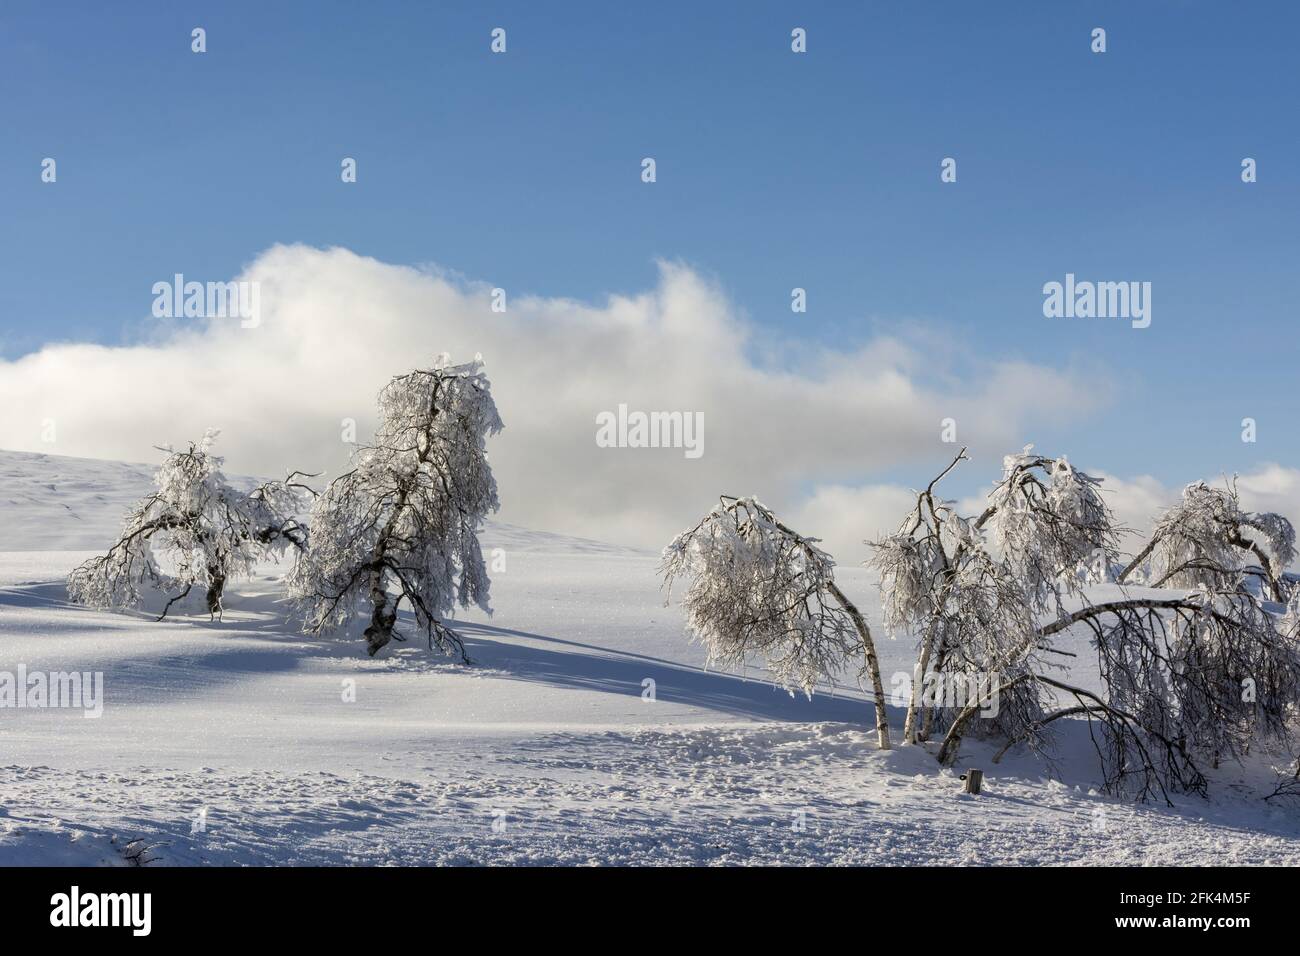 Neige et arbres enneigés dans le massif du Sancy, département du Puy de Dôme, Auvergne-Rhône-Alpes, France Banque D'Images